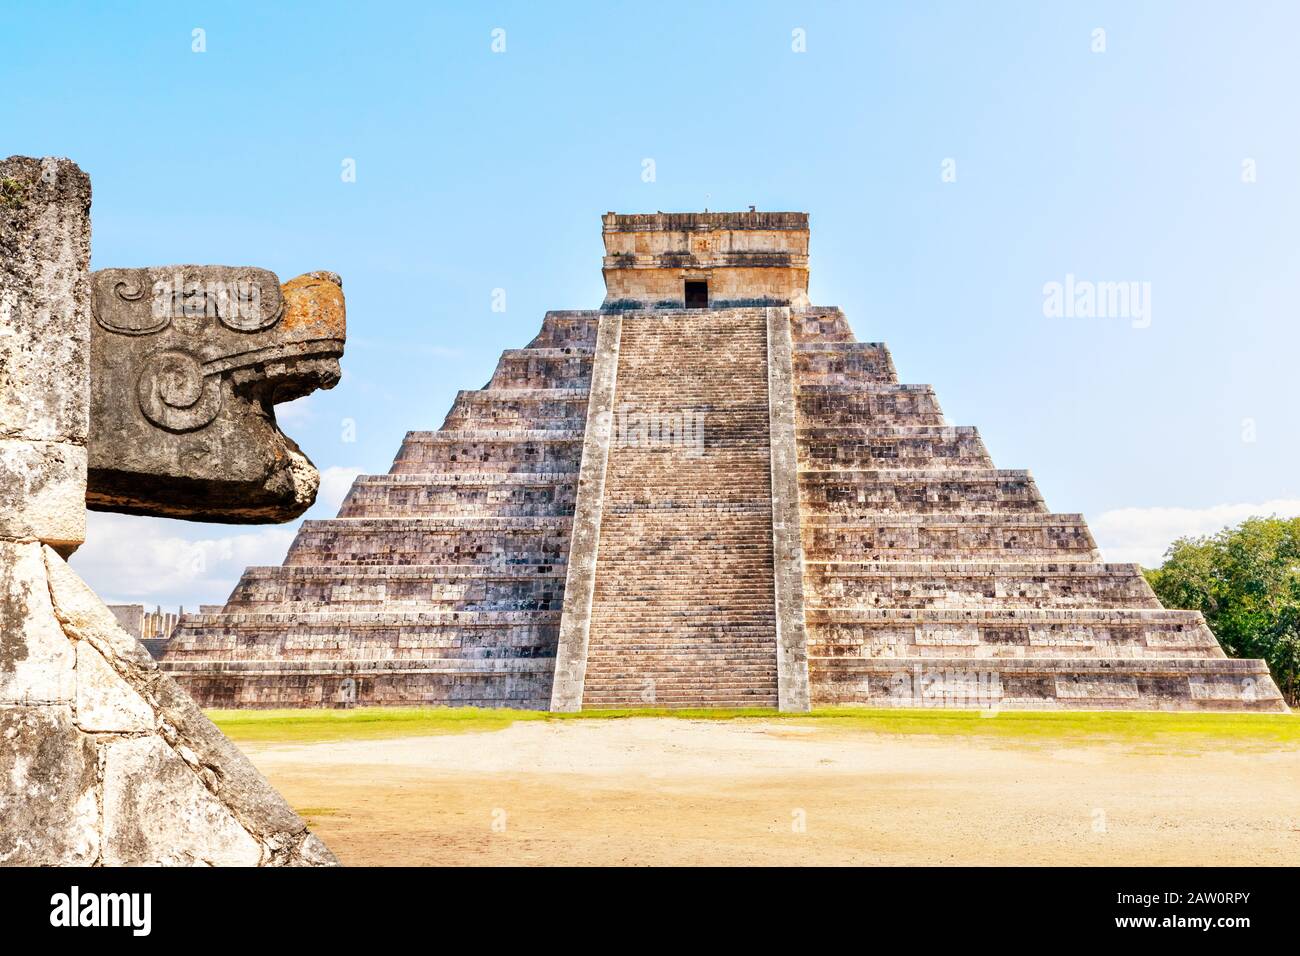 Die jahrhundertealte Maya Schlangenkopf-Skulptur und der Tempel der Kukulcan Pyramide in Chichen Itza auf der Halbinsel Yucatan in Mexiko. Ein Welterbe, IT i Stockfoto